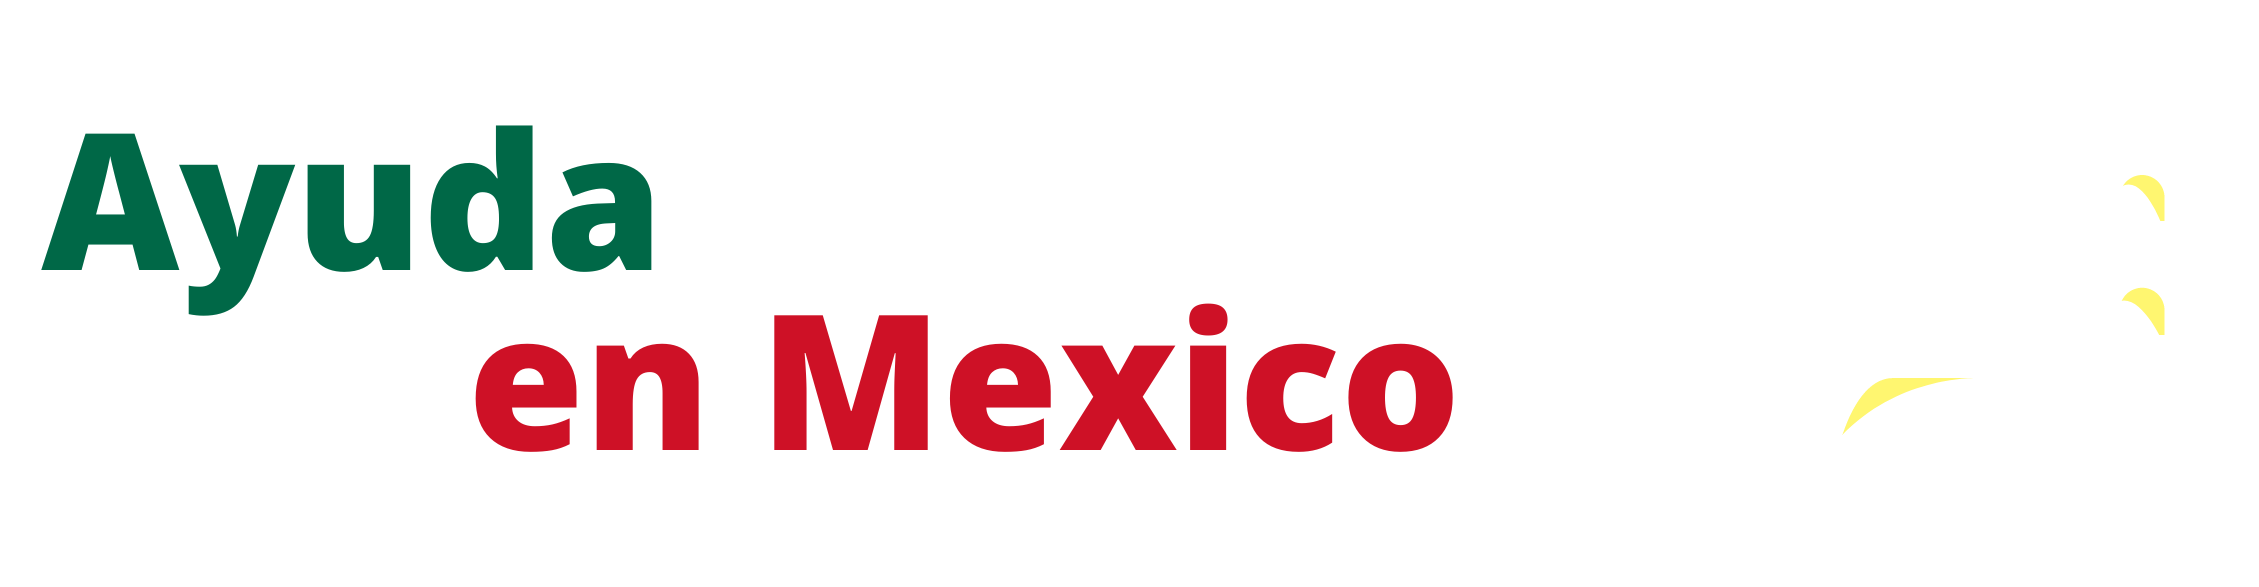 ayudafacturacion.com.mx